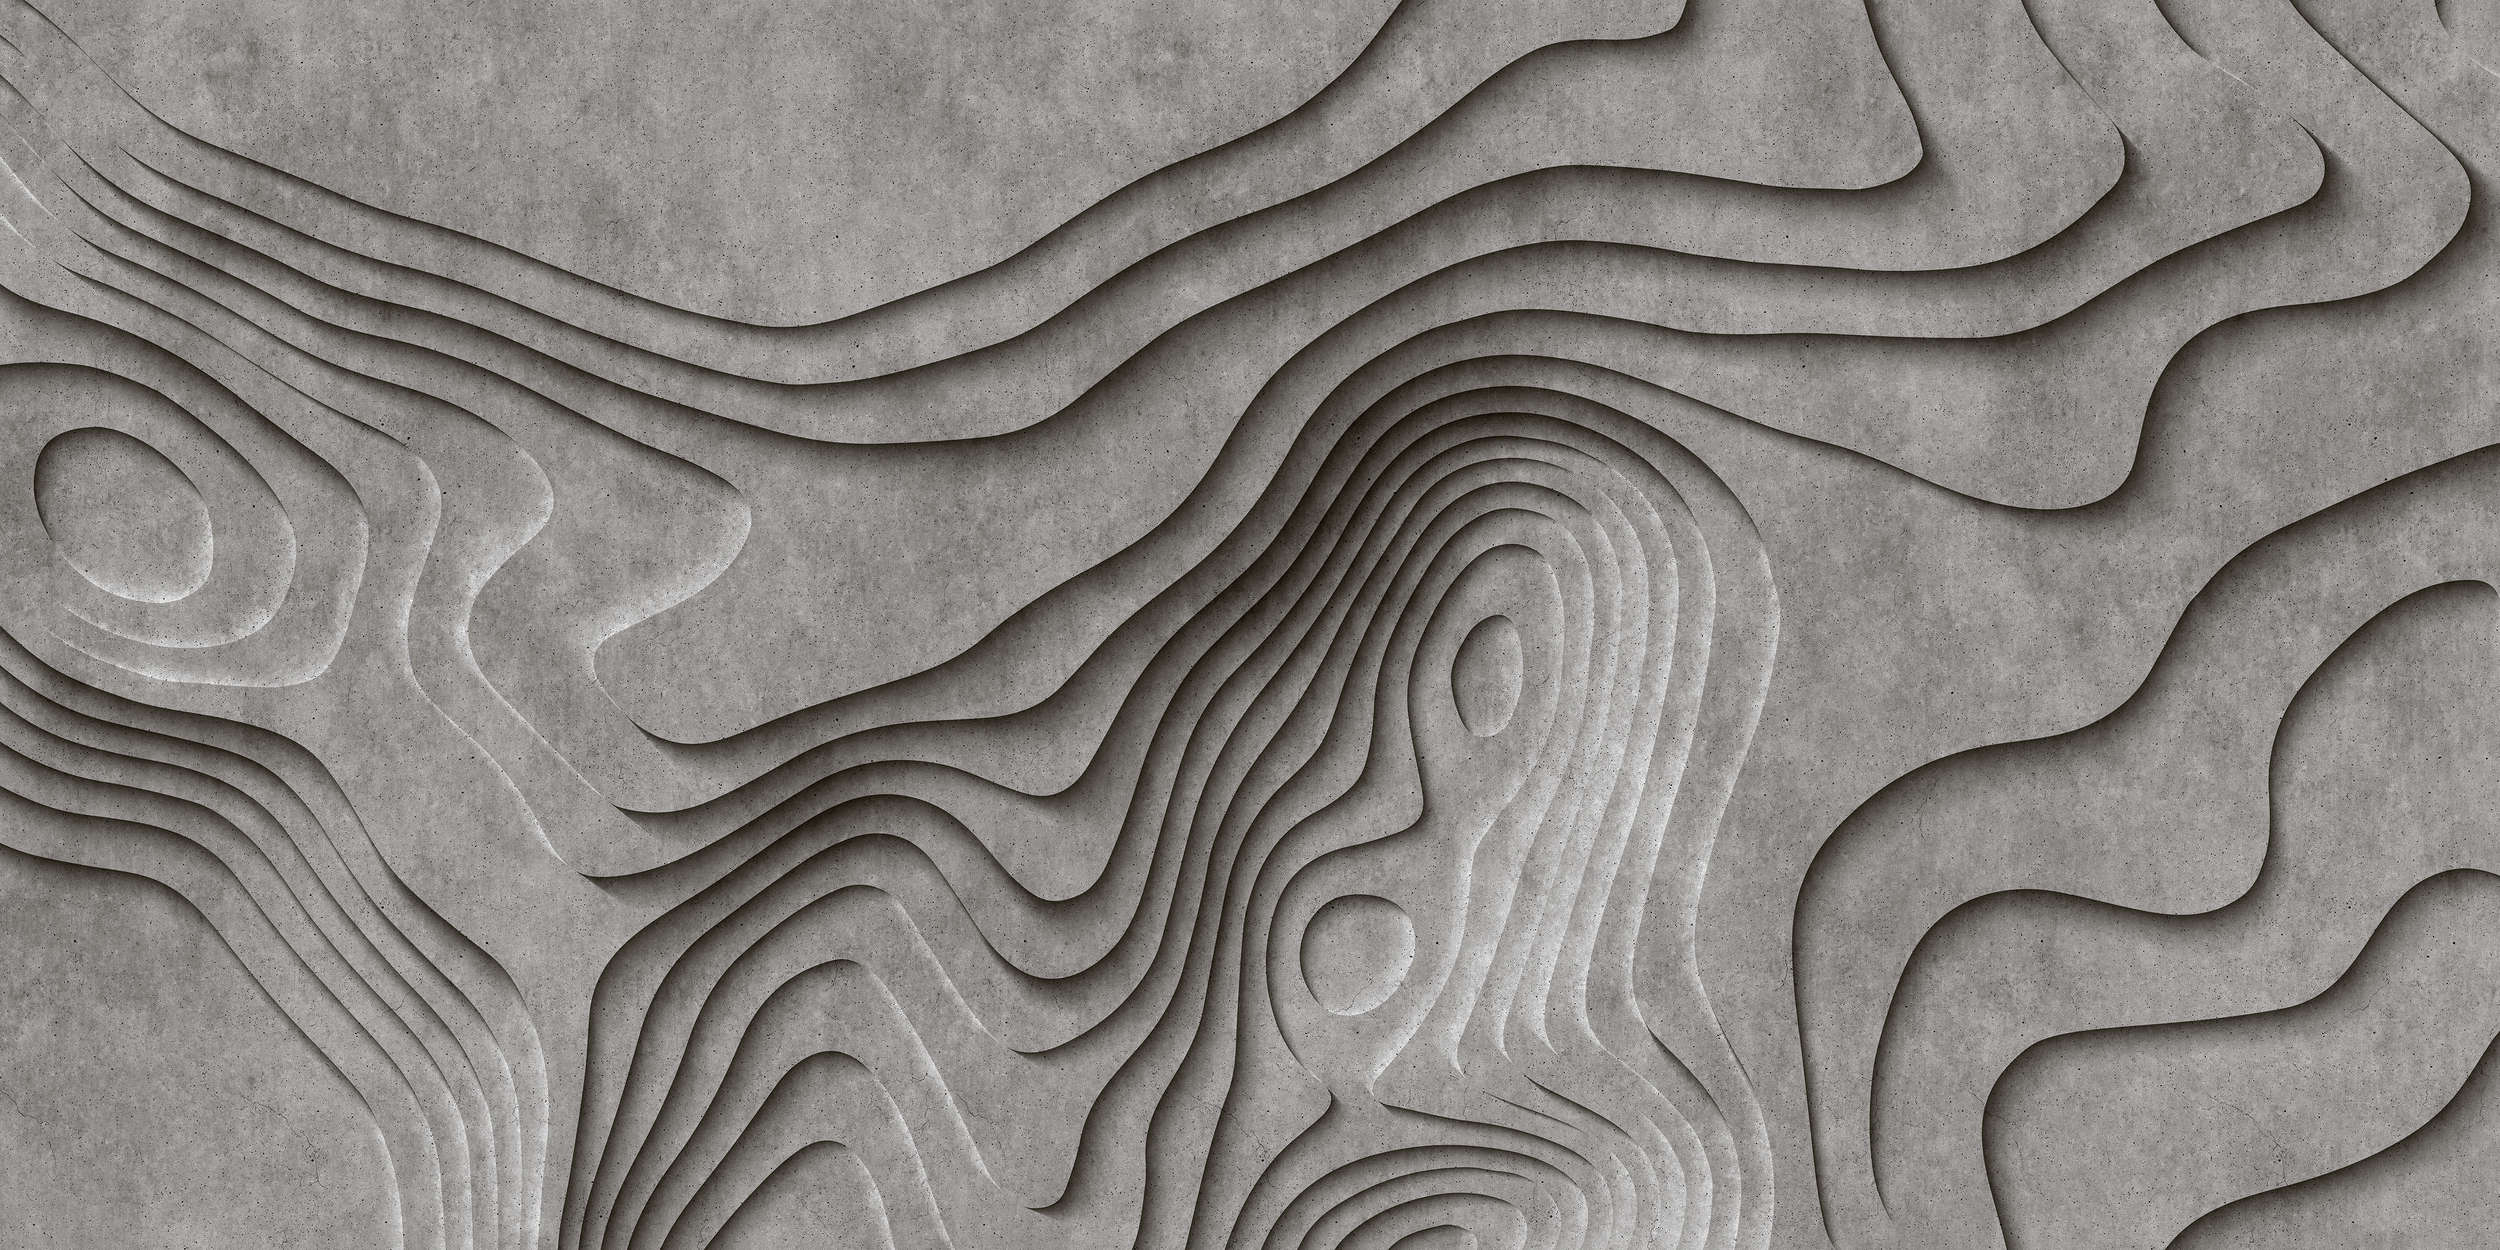             Canyon 1 - Papel pintado Fresco 3D Concreto Canyon - Gris, Negro | Tejido sin tejer texturado
        